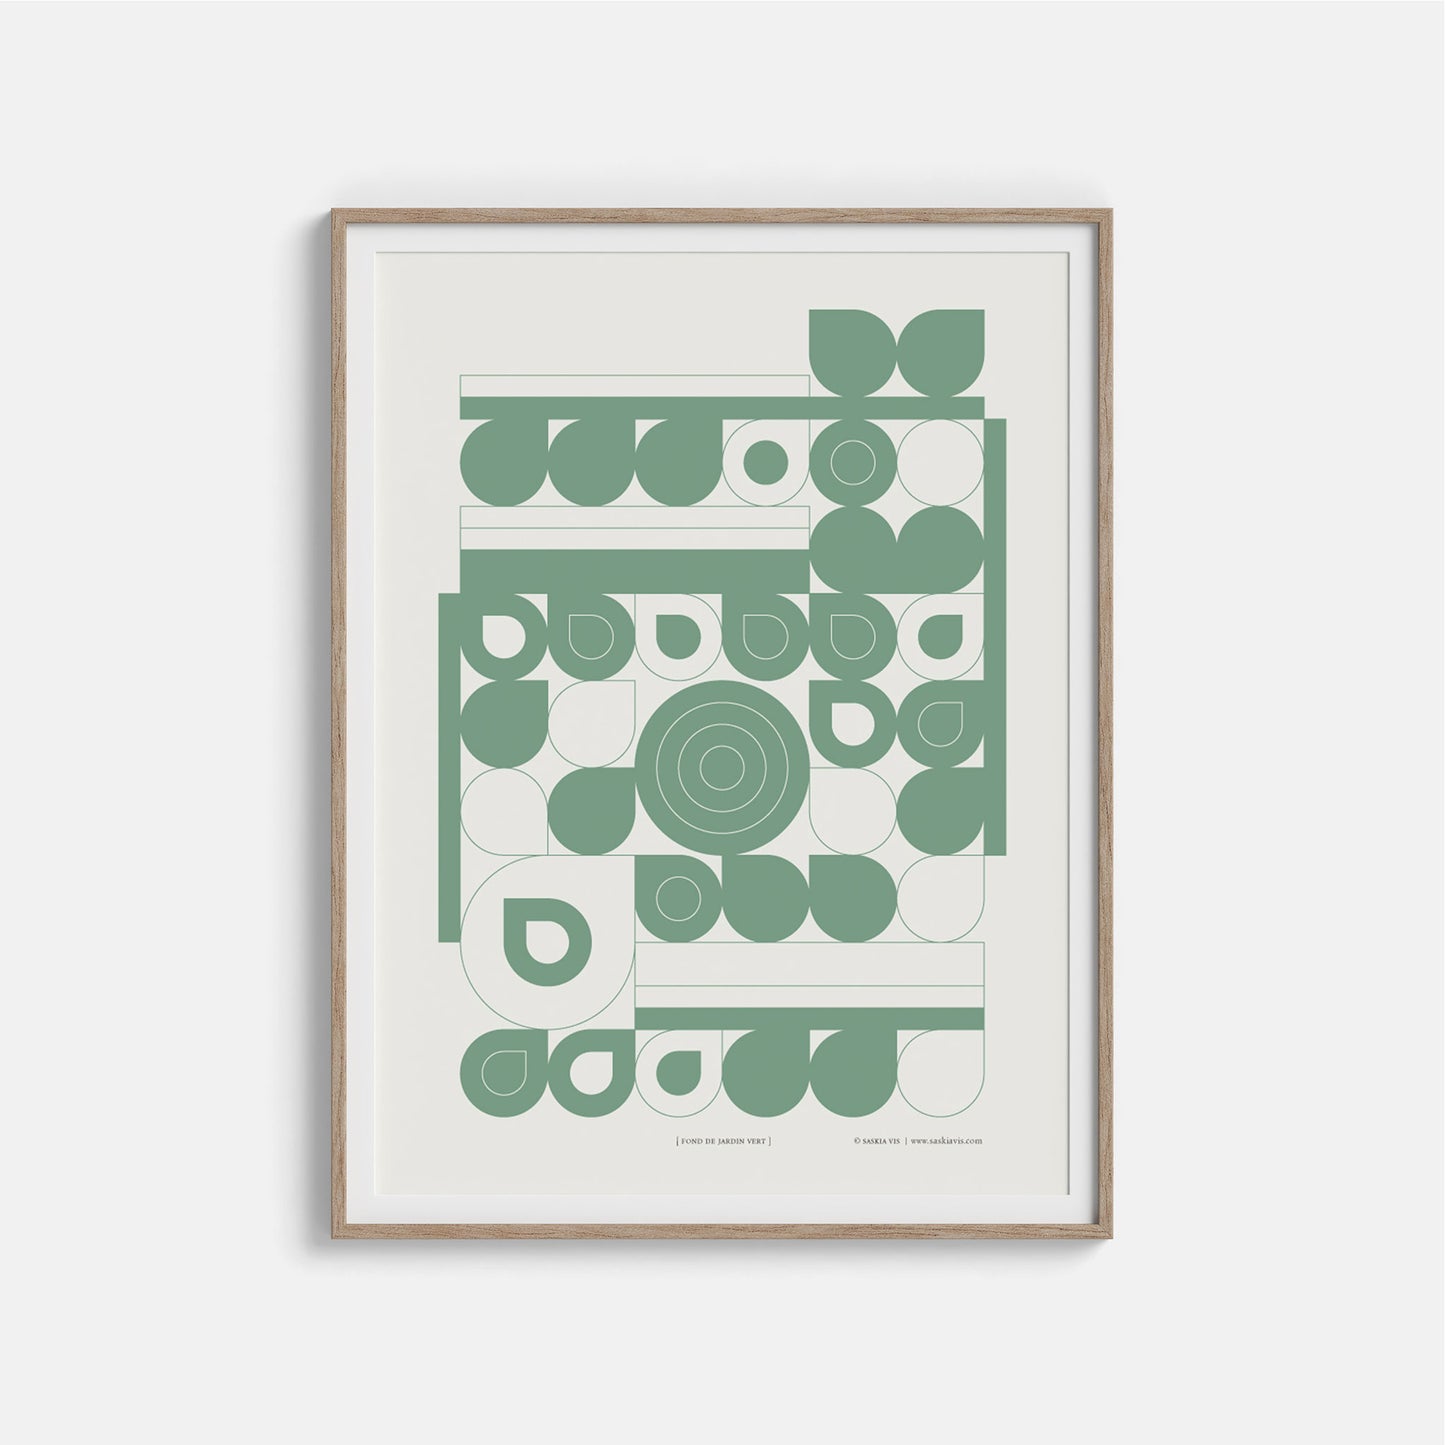 Productafbeelding poster "fond de jardin vert" ingelijst in een houten frame, hangend aan een creme gekleurde wand.